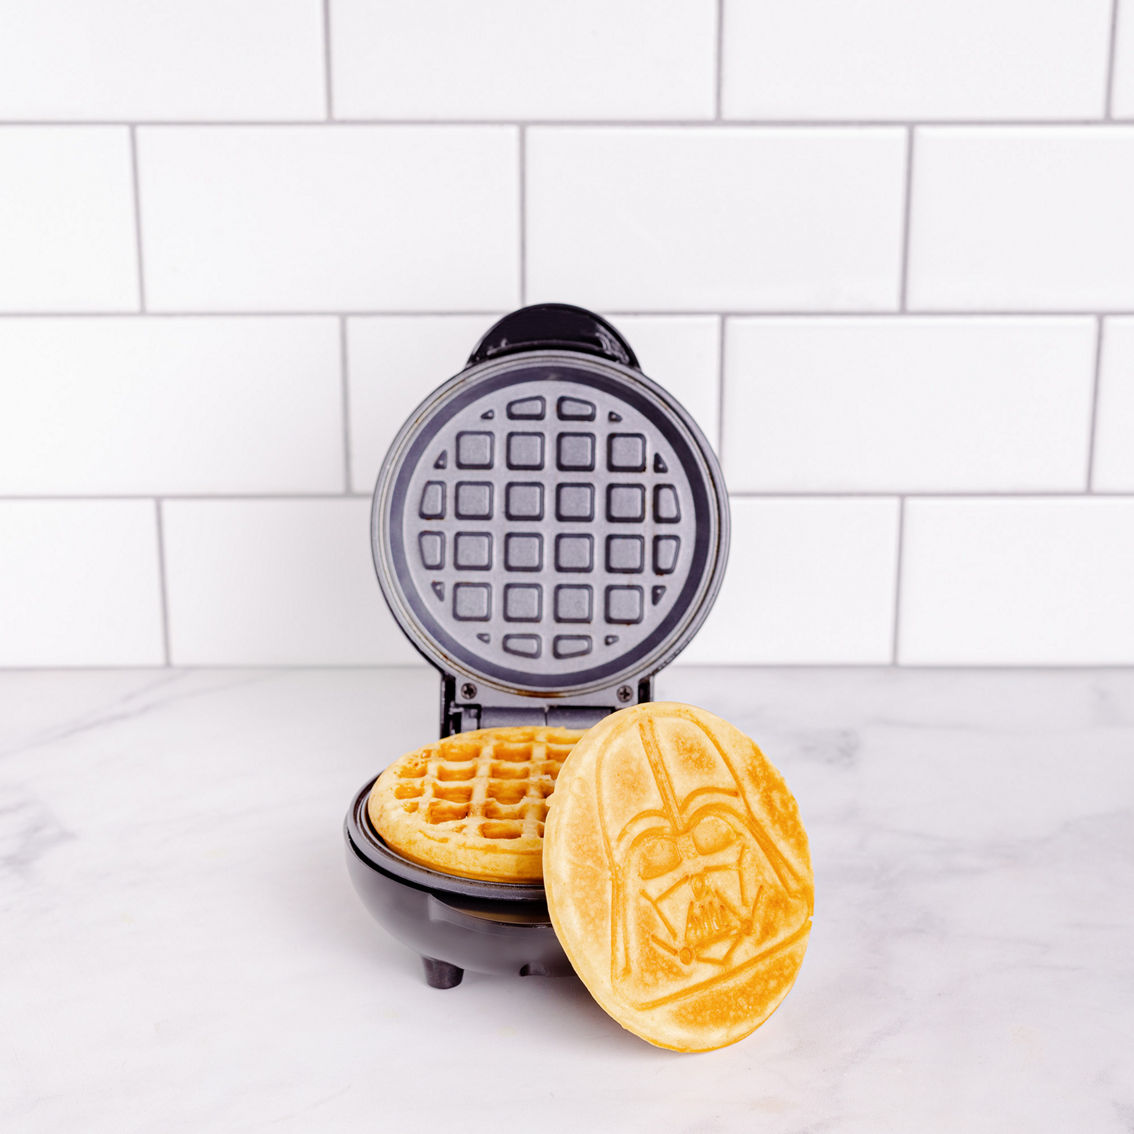 Uncanny Brands Star Wars Darth Vader Mini Waffle Maker - Image 3 of 7